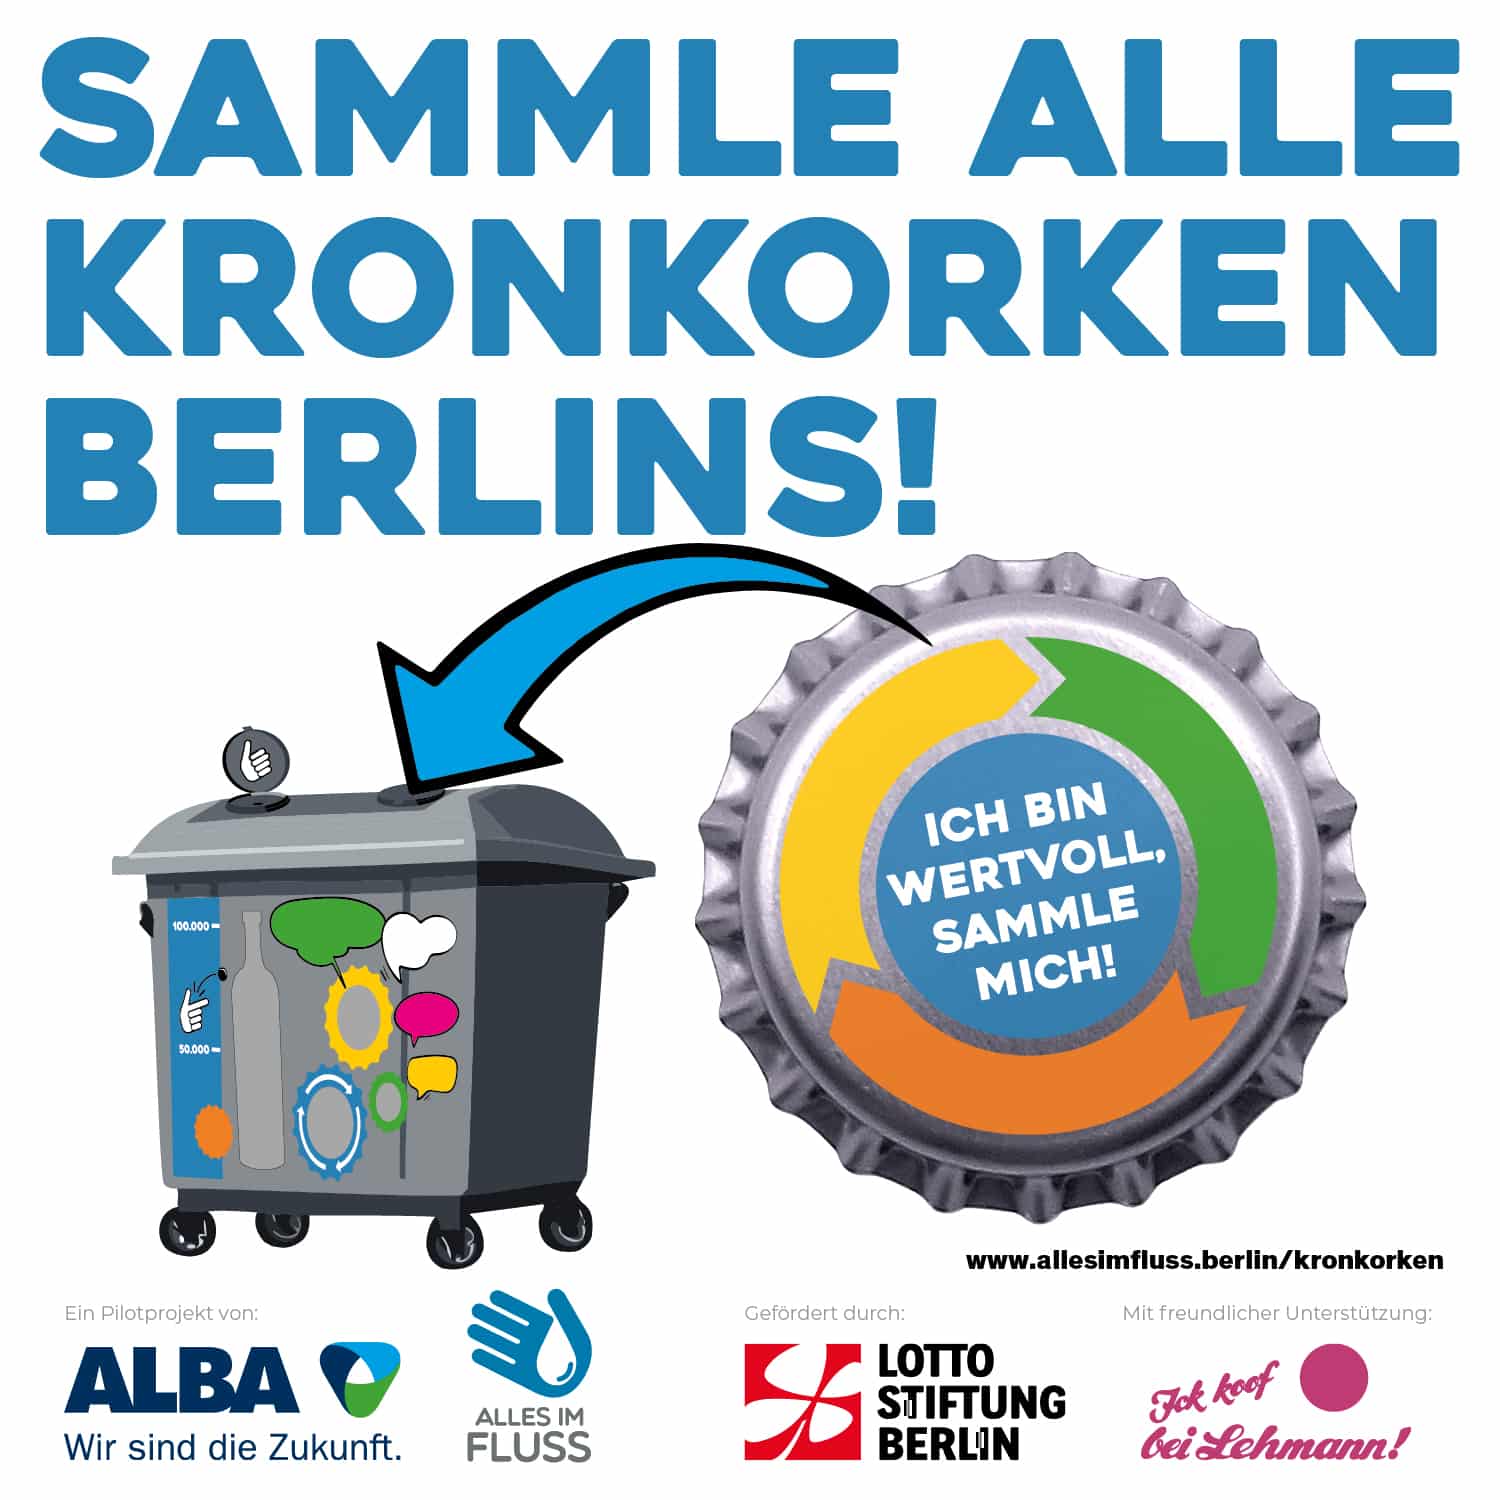 Ein Kronkorken wird in einen bunten Kronkorken-Sammelcontainer geworfen und darüber steht: Sammle alle Kronkorken Berlins!